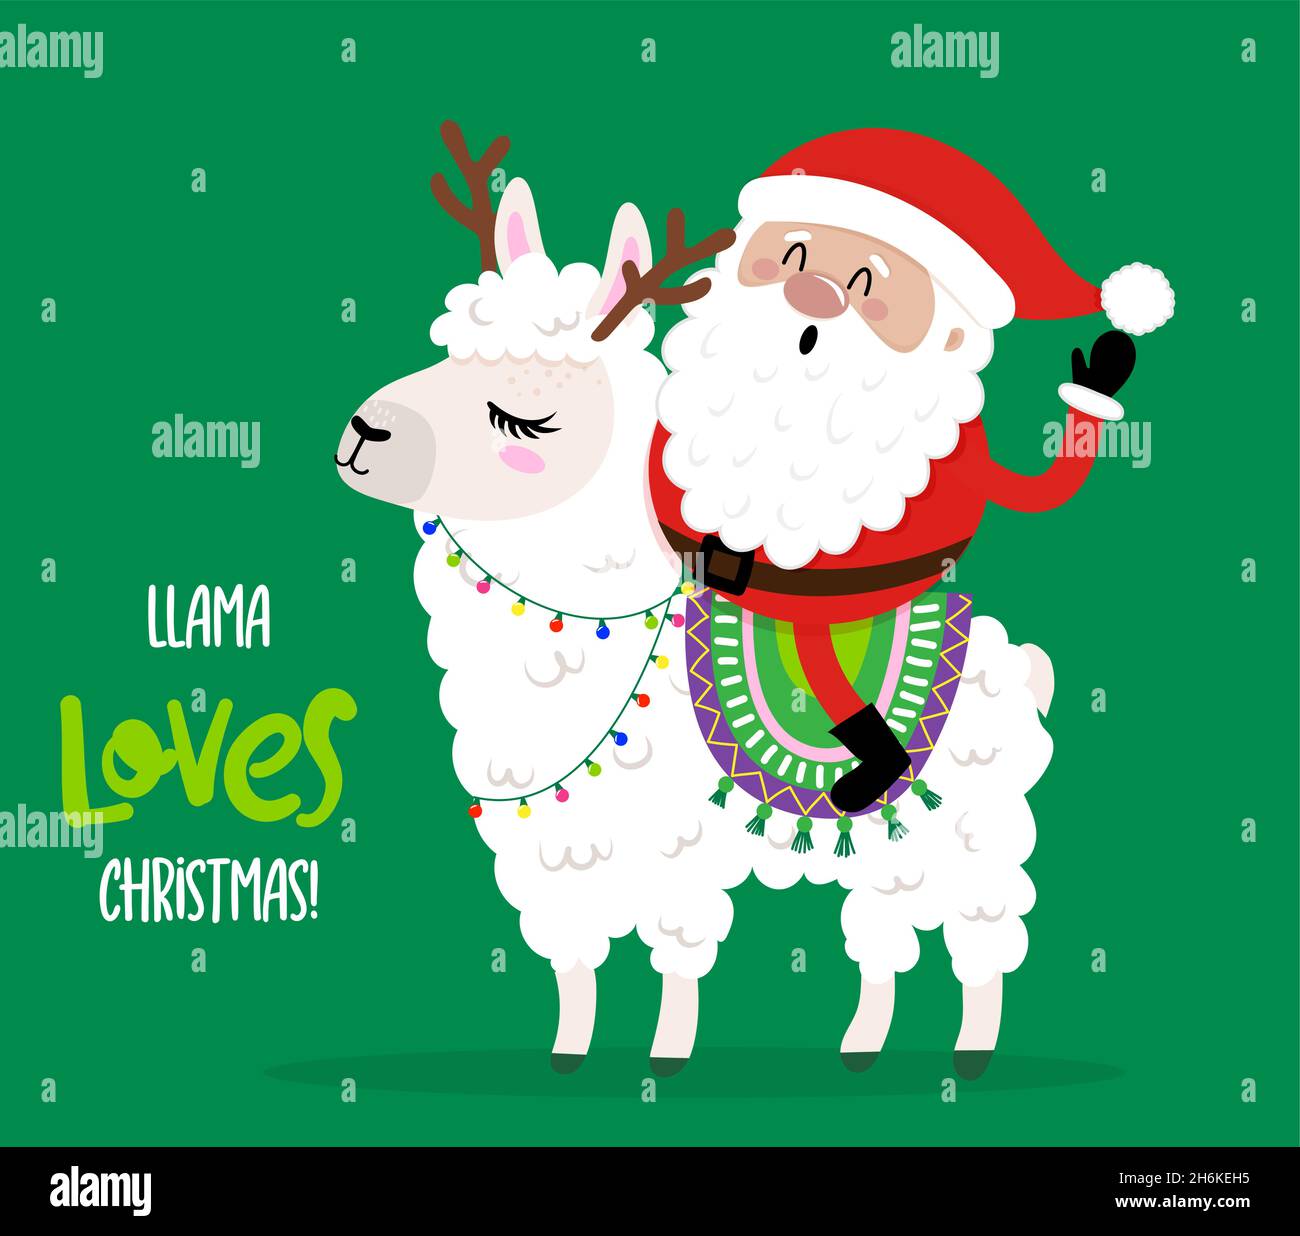 Llama aime Noël - le père noël fait un tour de lama.Lettrage dessiné à la main pour cartes de voeux de Noël, invitations.Bon pour t-shirt, mug, réservation de rebut, cadeau, p Illustration de Vecteur